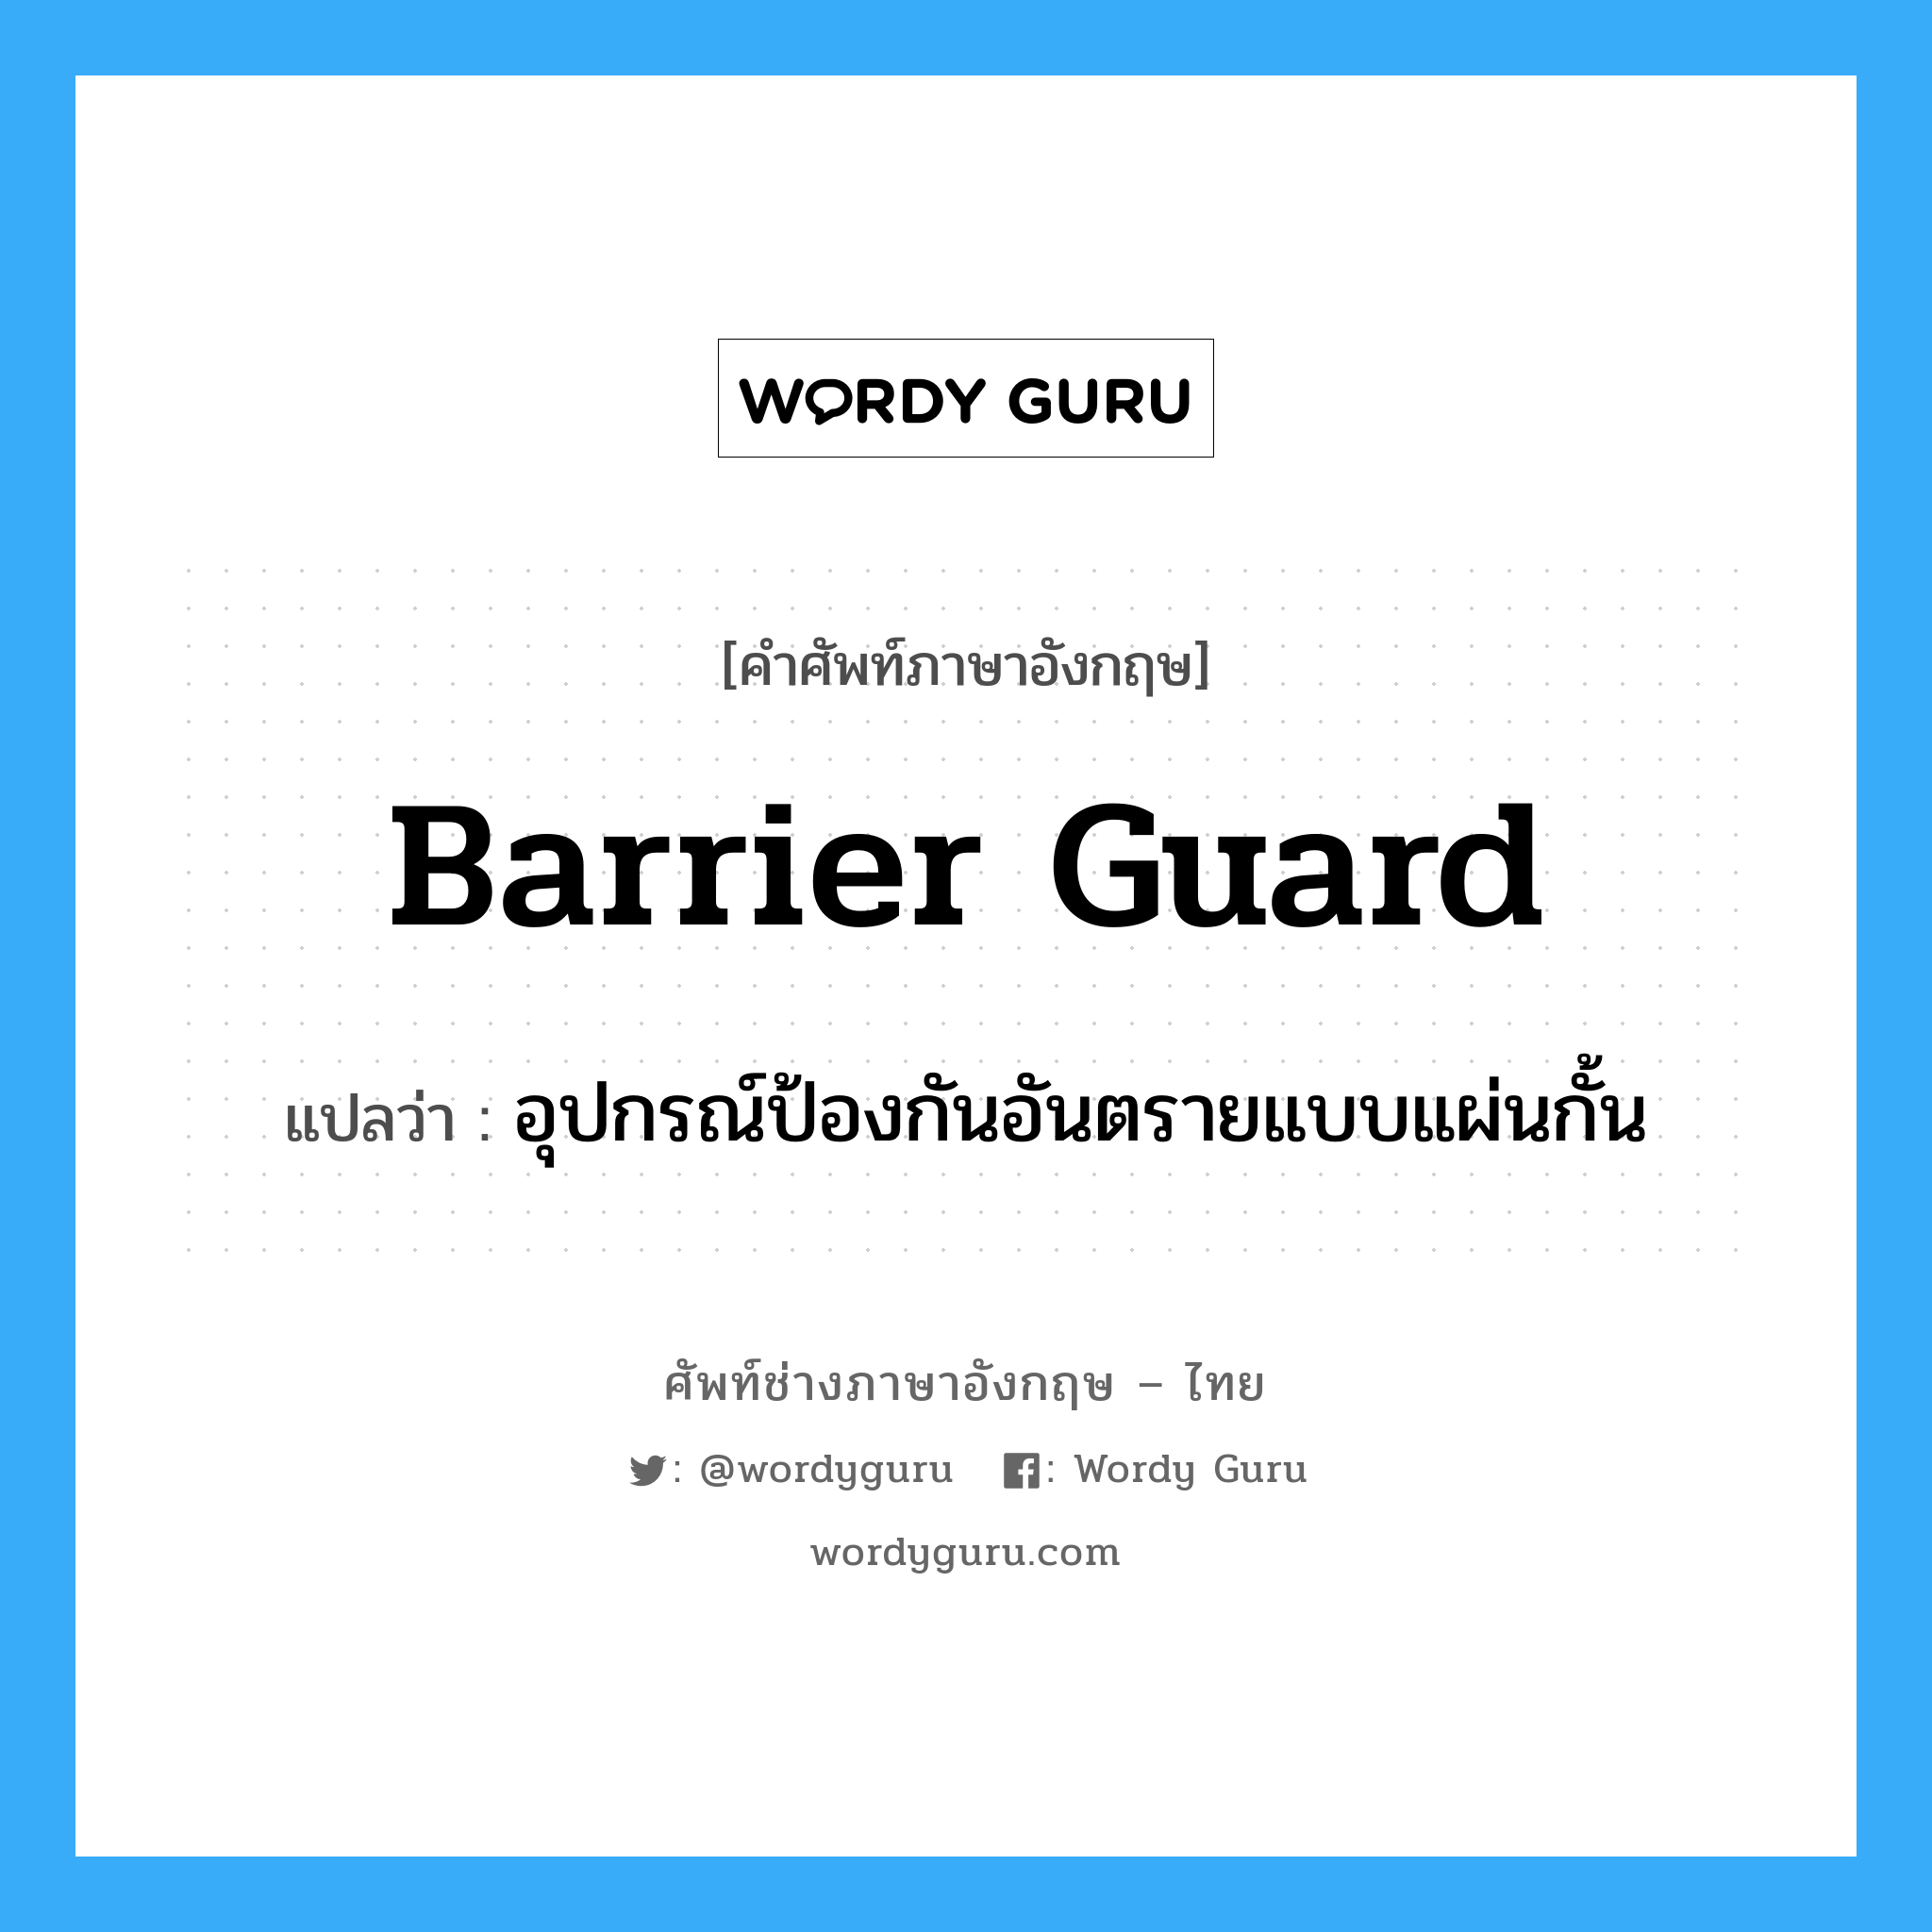 Barrier Guard แปลว่า?, คำศัพท์ช่างภาษาอังกฤษ - ไทย Barrier Guard คำศัพท์ภาษาอังกฤษ Barrier Guard แปลว่า อุปกรณ์ป้องกันอันตรายแบบแผ่นกั้น